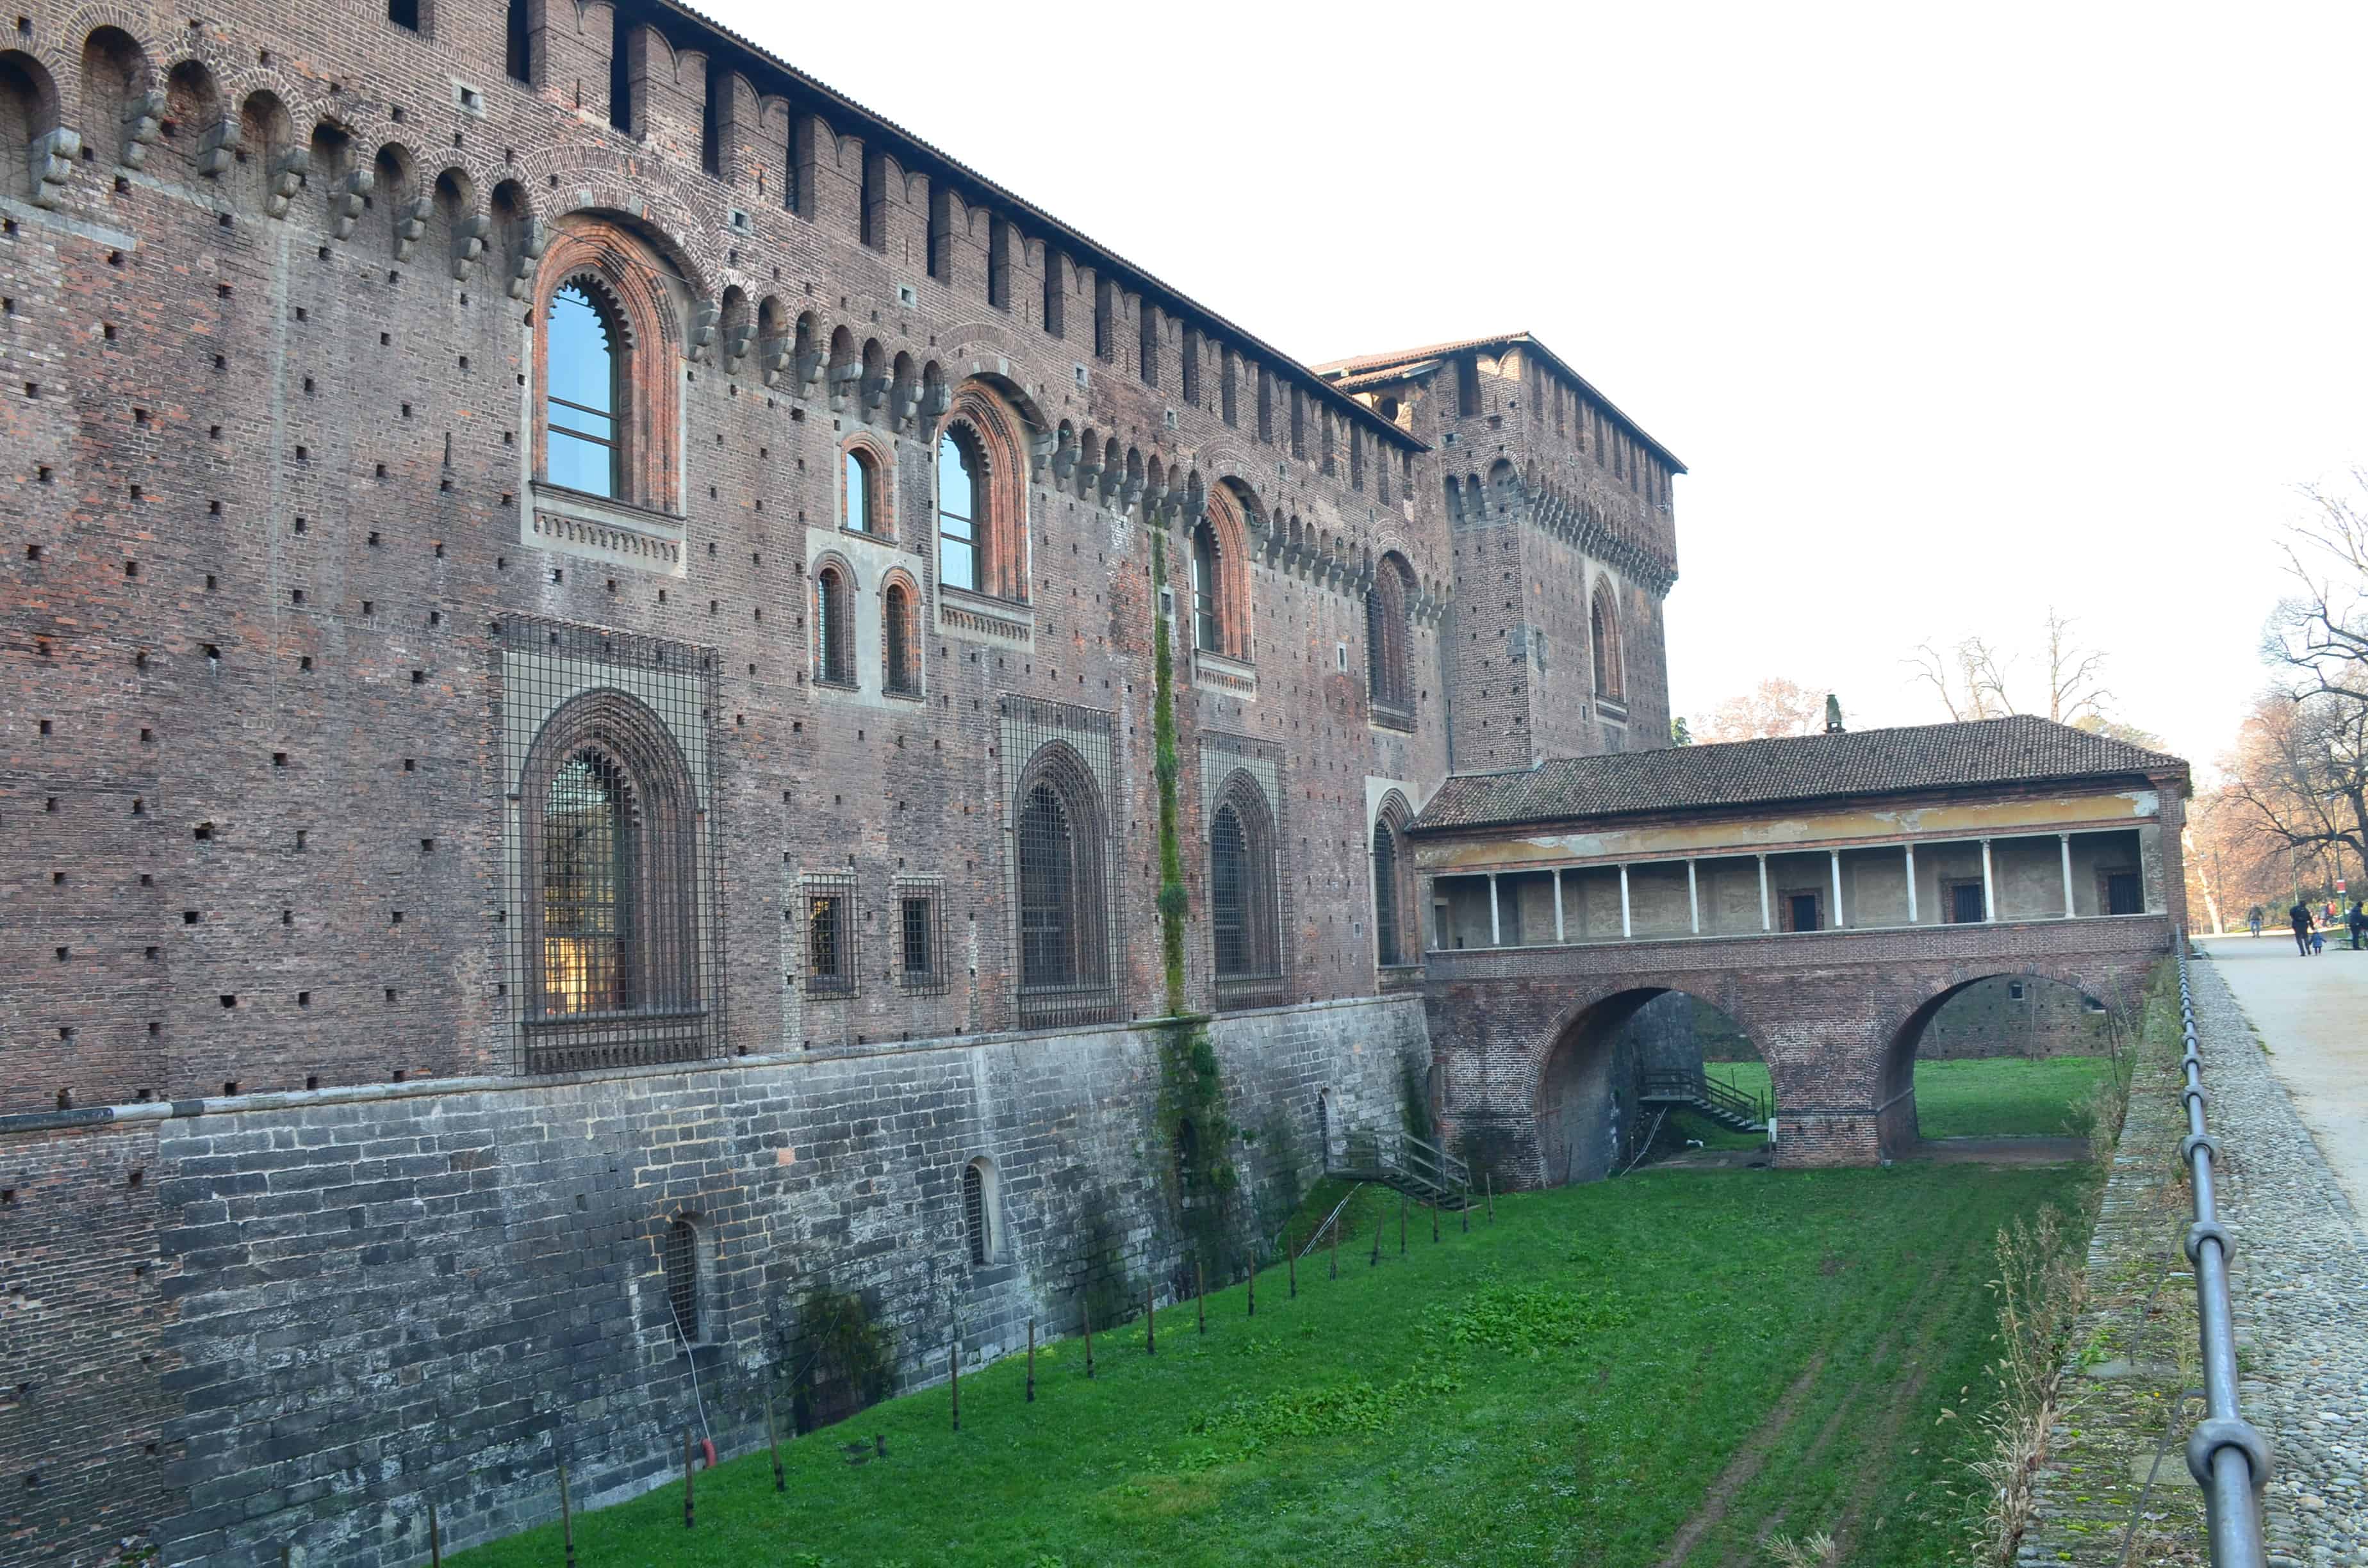 Ponticella at Sforza Castle in Milan, Italy